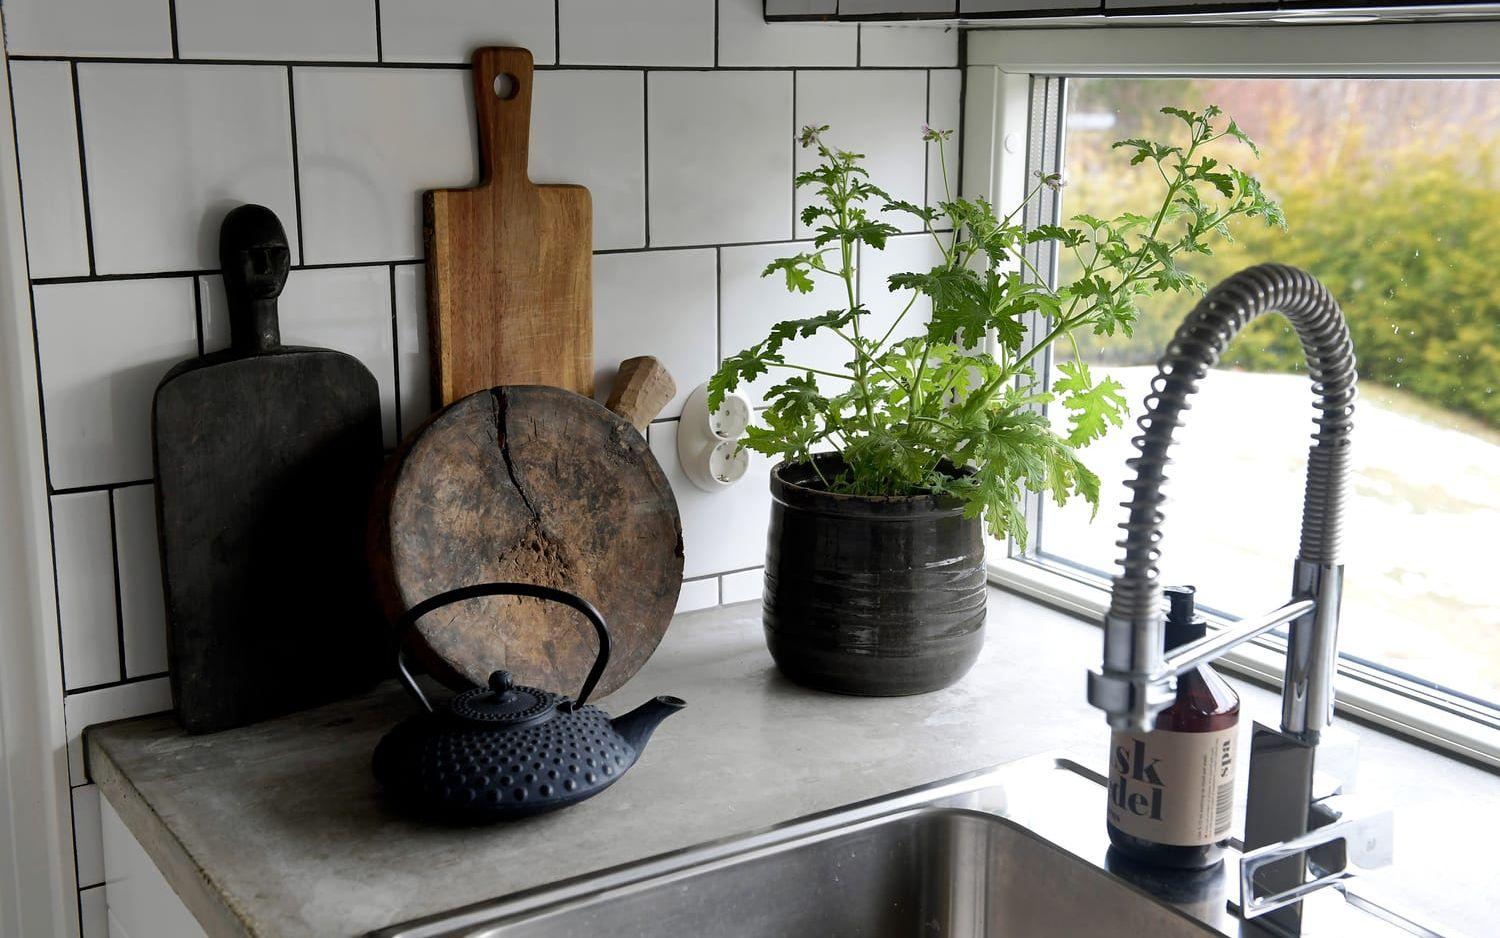 Det lilla köket har ett fint ljusinsläpp över köksbänken. Foto: Janerik Henriksson/TT